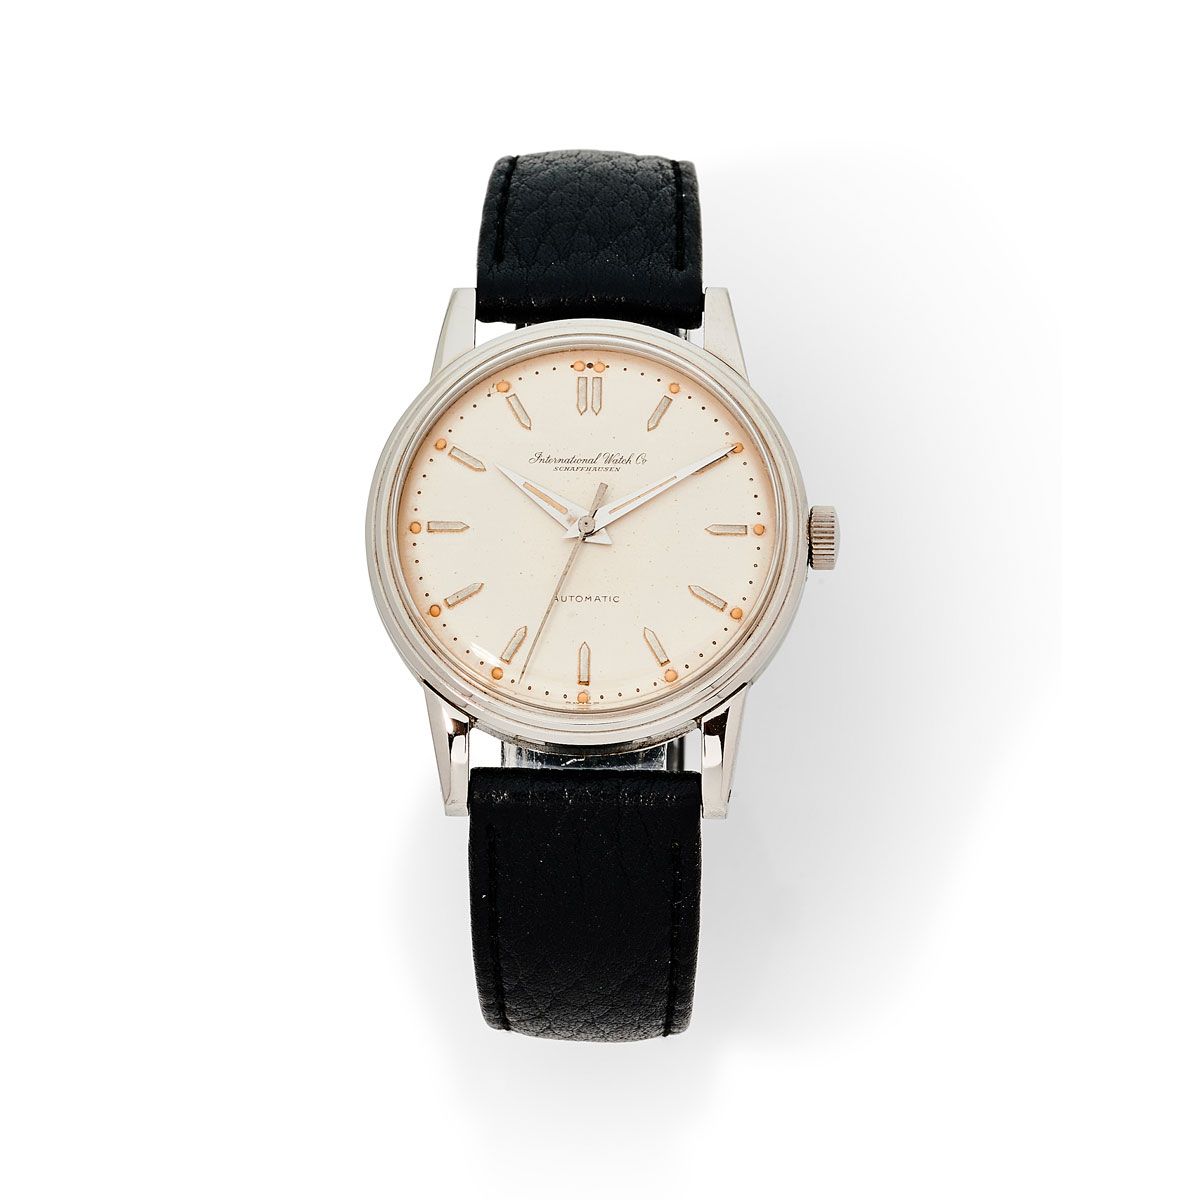 Null Internationnal Watch Co., Nr. 1382675, ca. 1955.

Eine schöne klassische St&hellip;